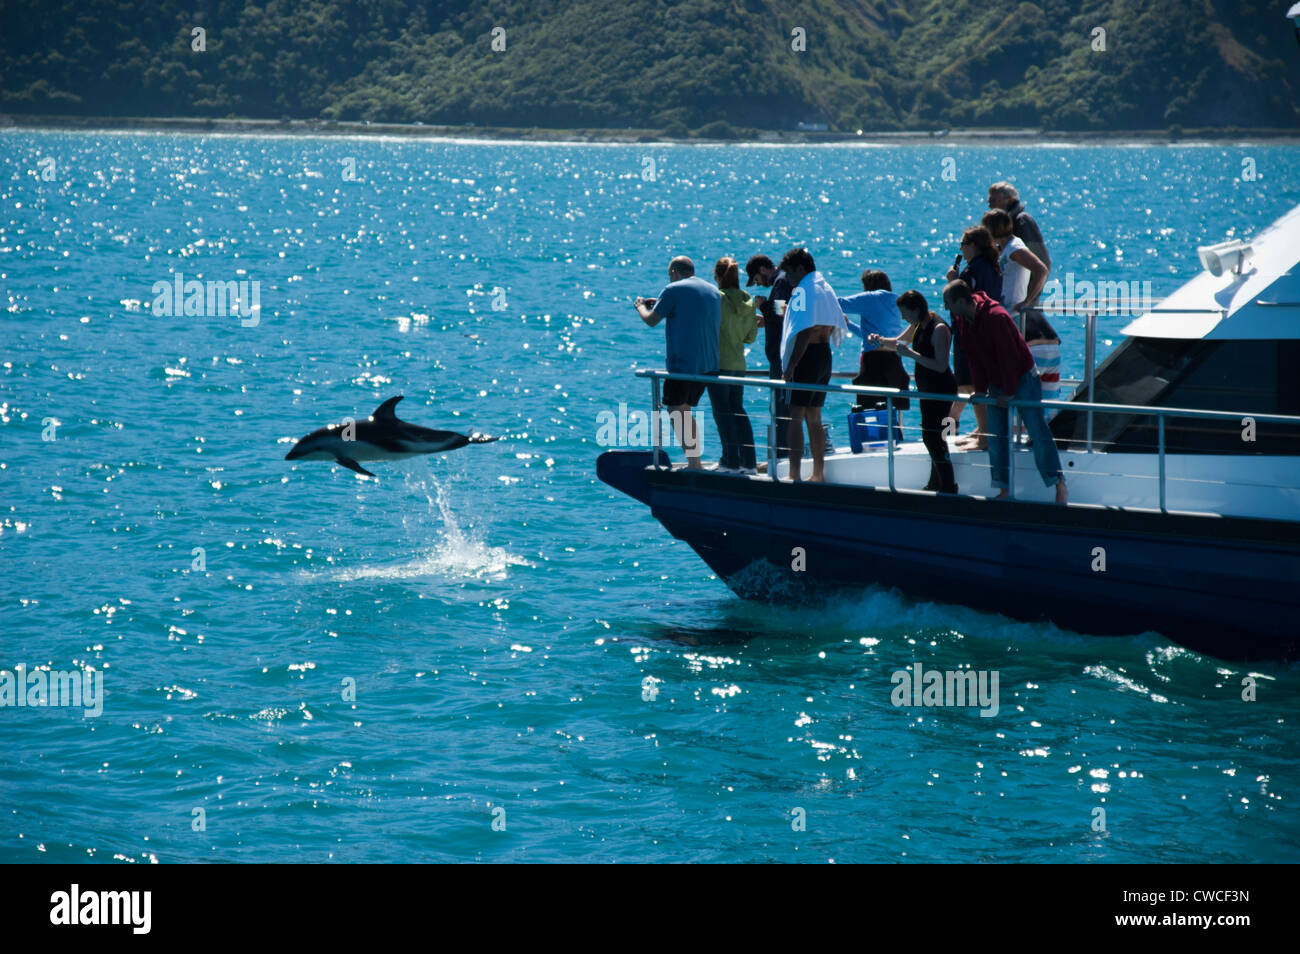 Rencontre des dauphins est une entreprise de tourisme à Kaikoura en Nouvelle-Zélande offrant la nage avec les dauphins et d'observer les dauphins. Banque D'Images